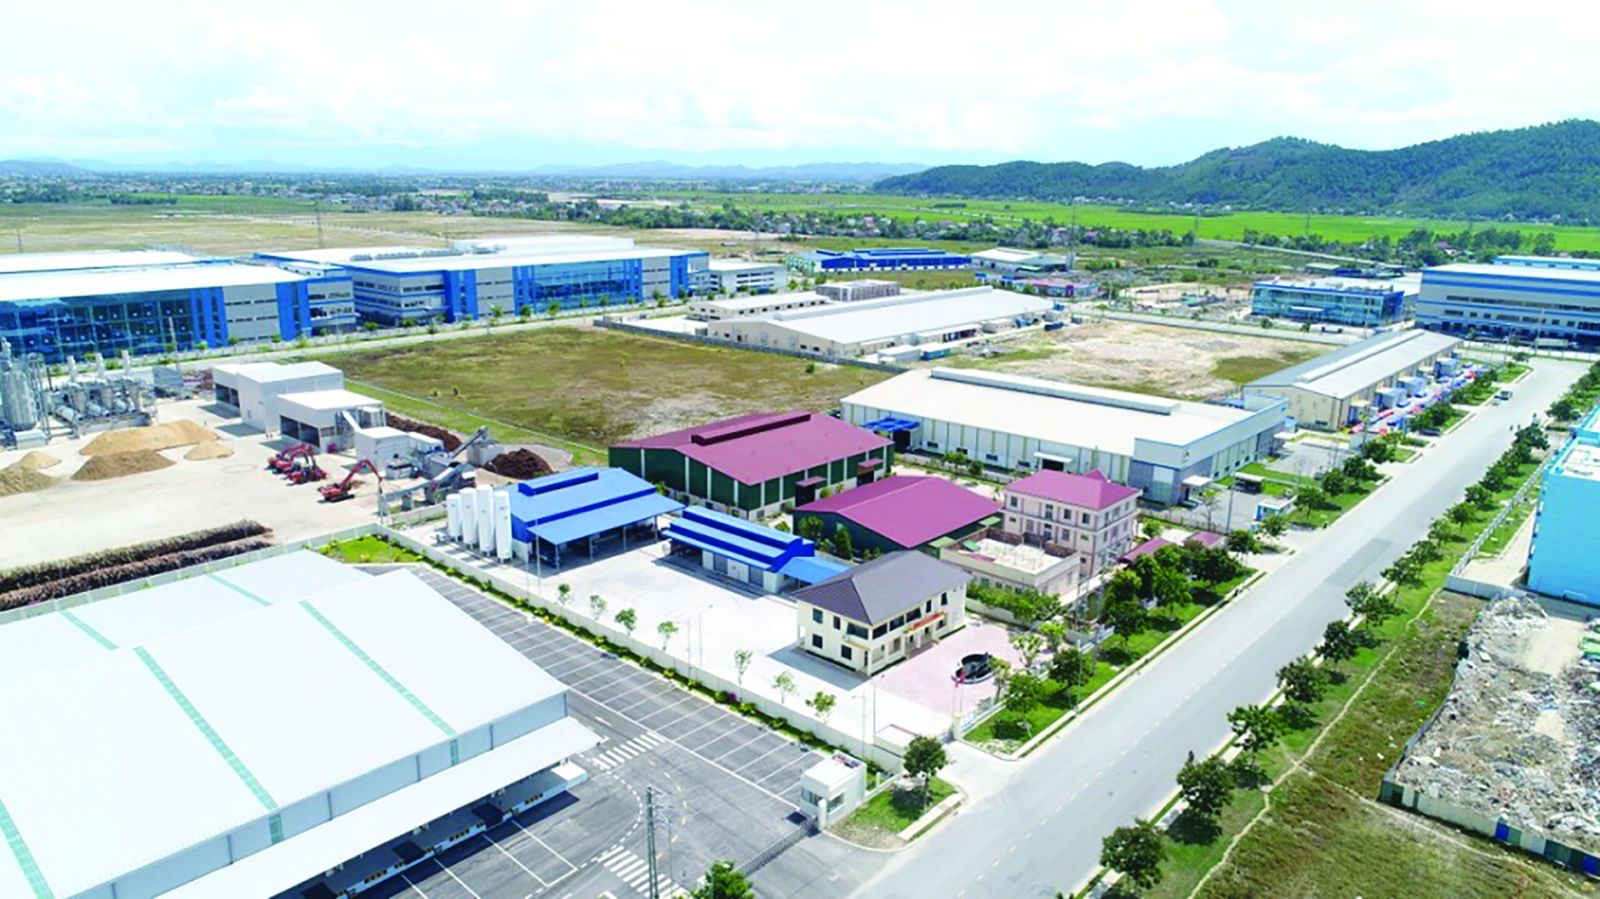 Thị trường bất động sản công nghiệp ở Nghệ An đang trỗi dậy nhờ hút nguồn vốn FDI lớn